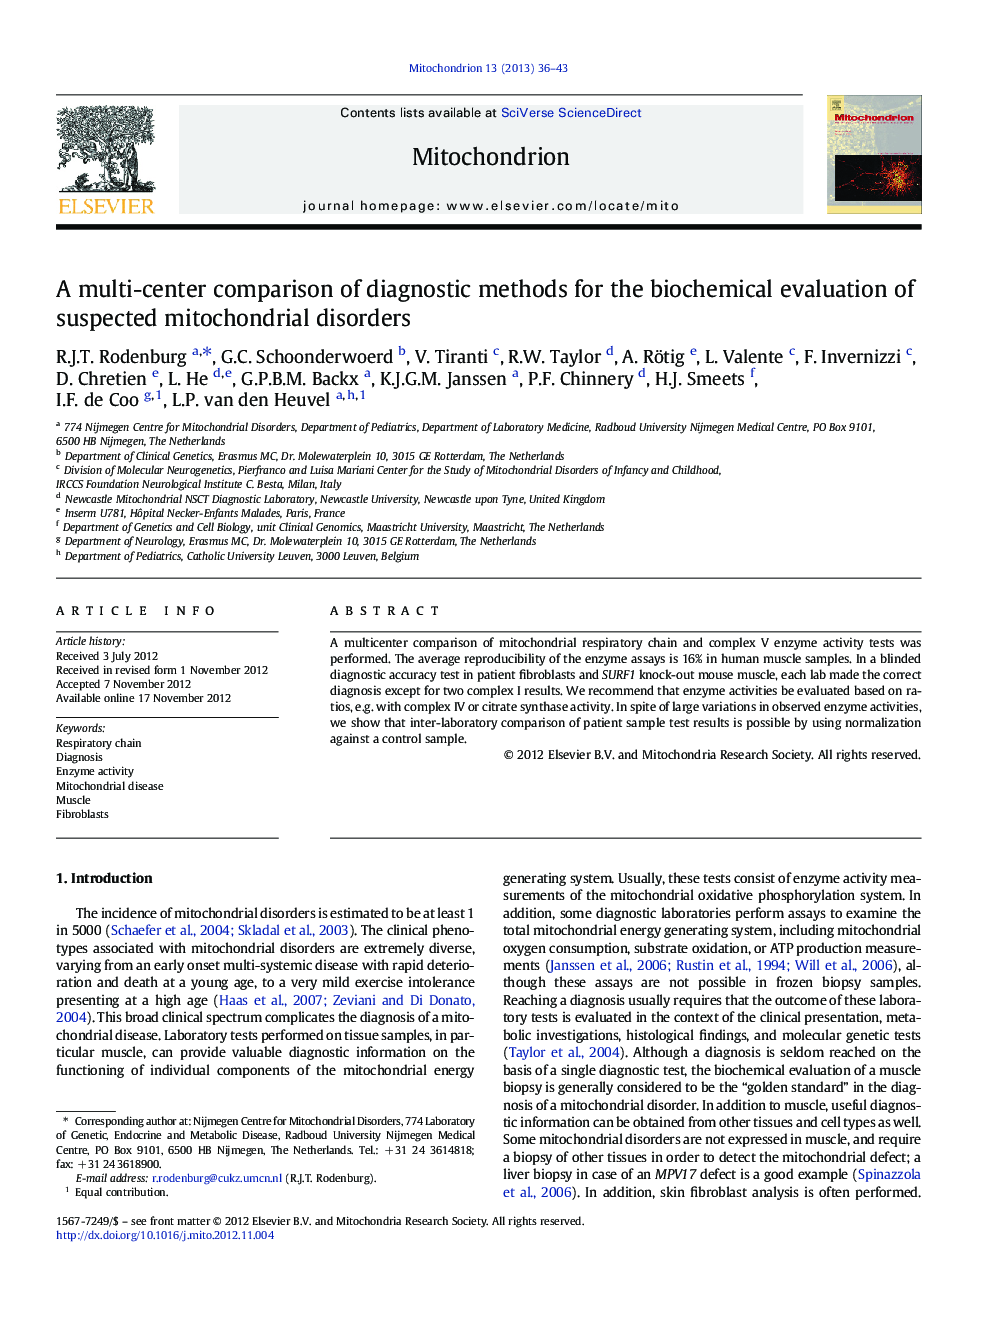 مقایسه چند مرکزی از روشهای تشخیصی برای ارزیابی بیوشیمیایی اختلالات متضاد میتوکندریایی 